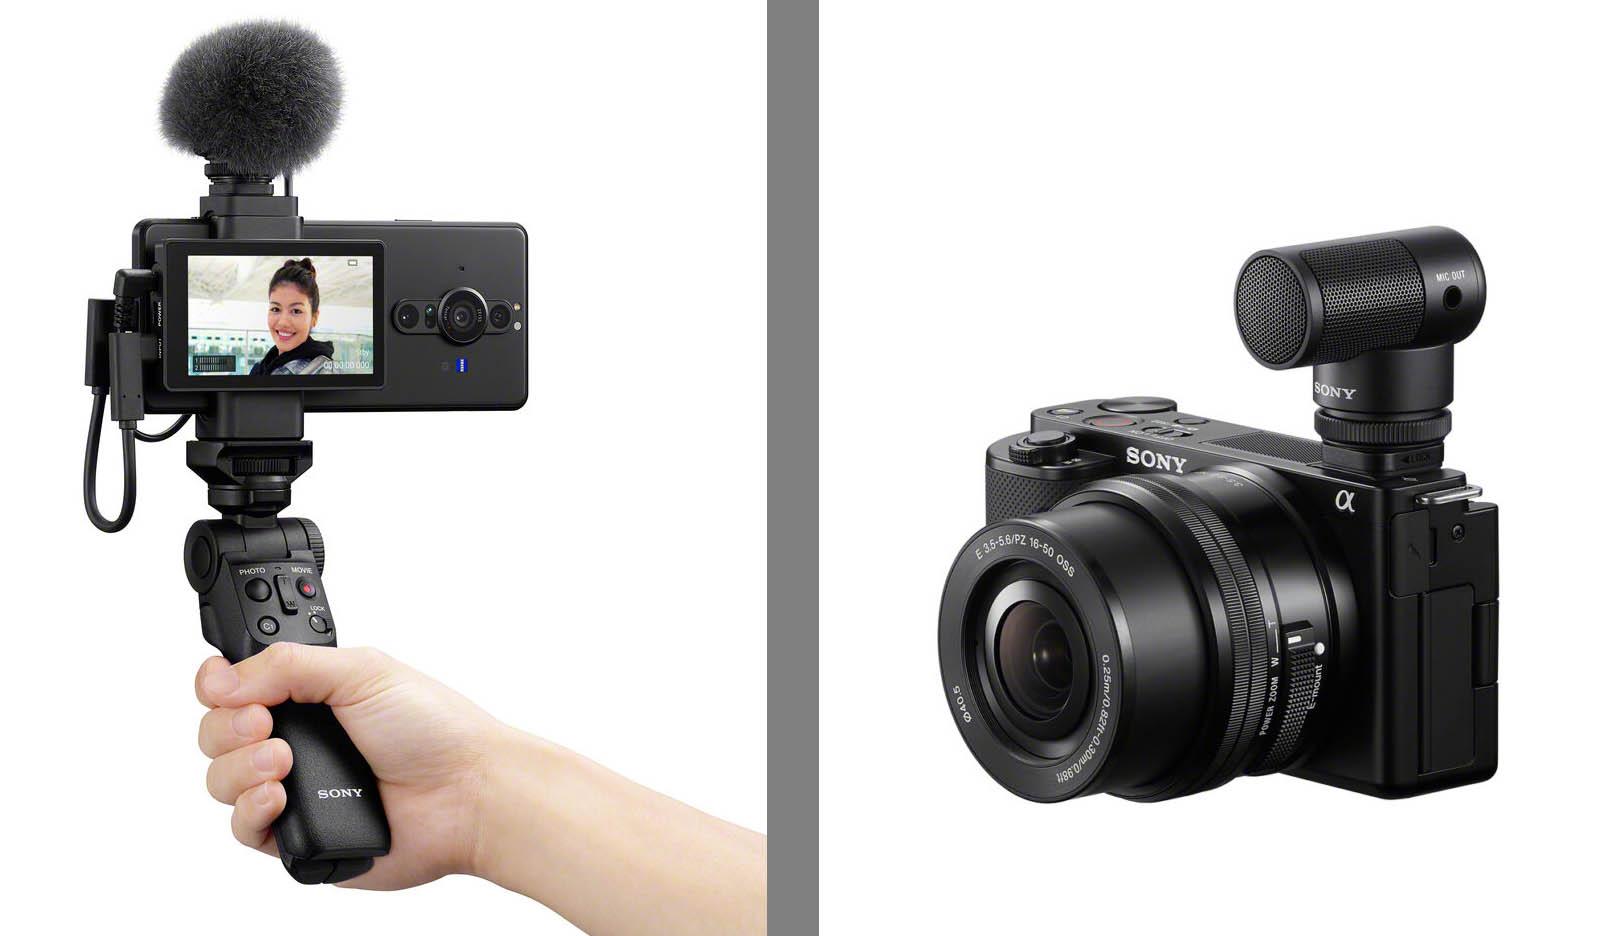 Sony bringt mit kleines Mikrofon zu ihren Vlogging-Kameras - fotointern.ch – Tagesaktuelle Fotonews